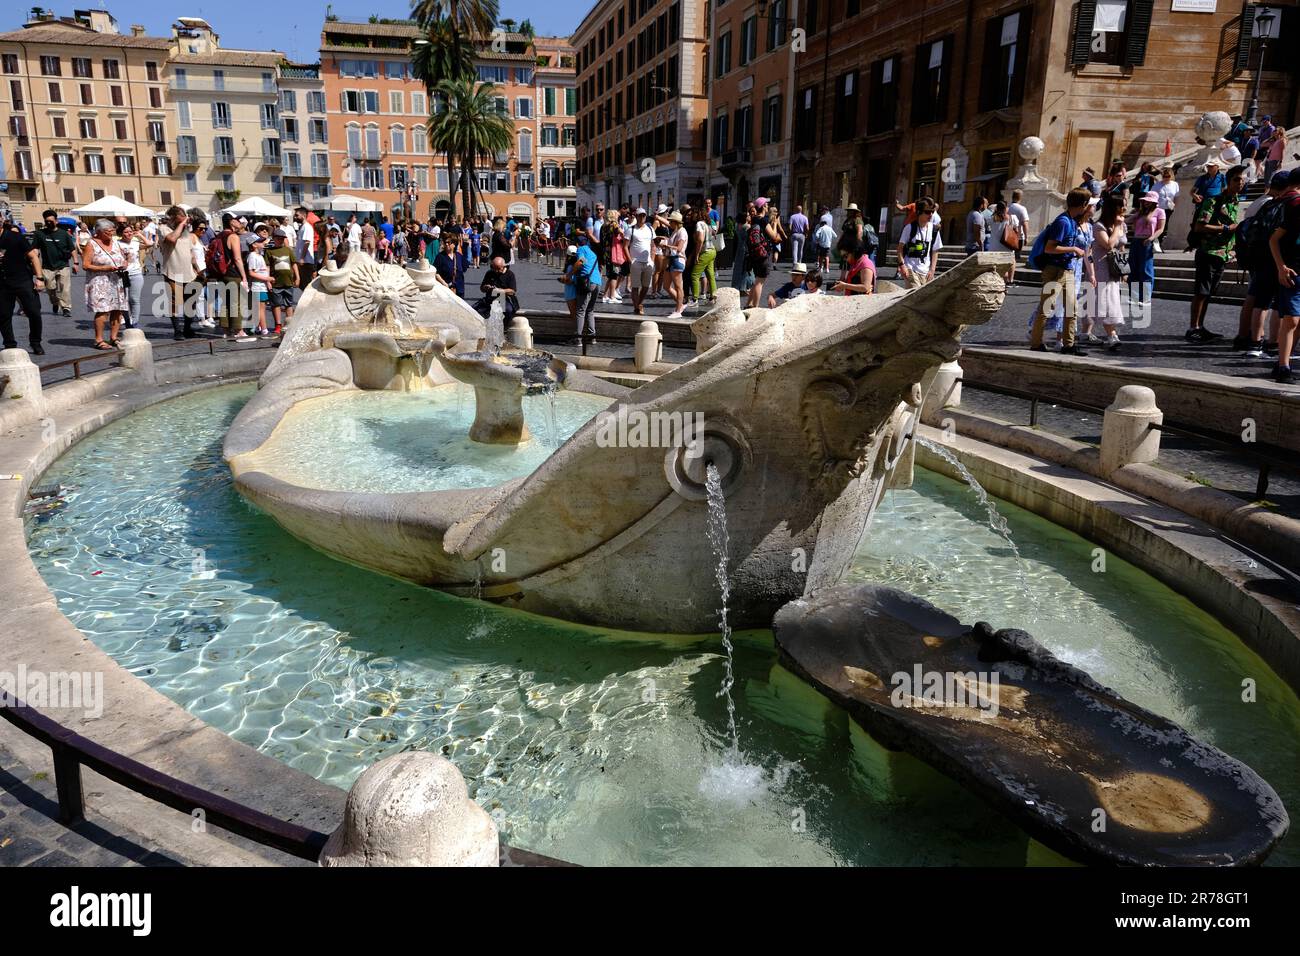 The Fontana della Barcaccia in Piazza di Spagna in Rome Italy Stock Photo